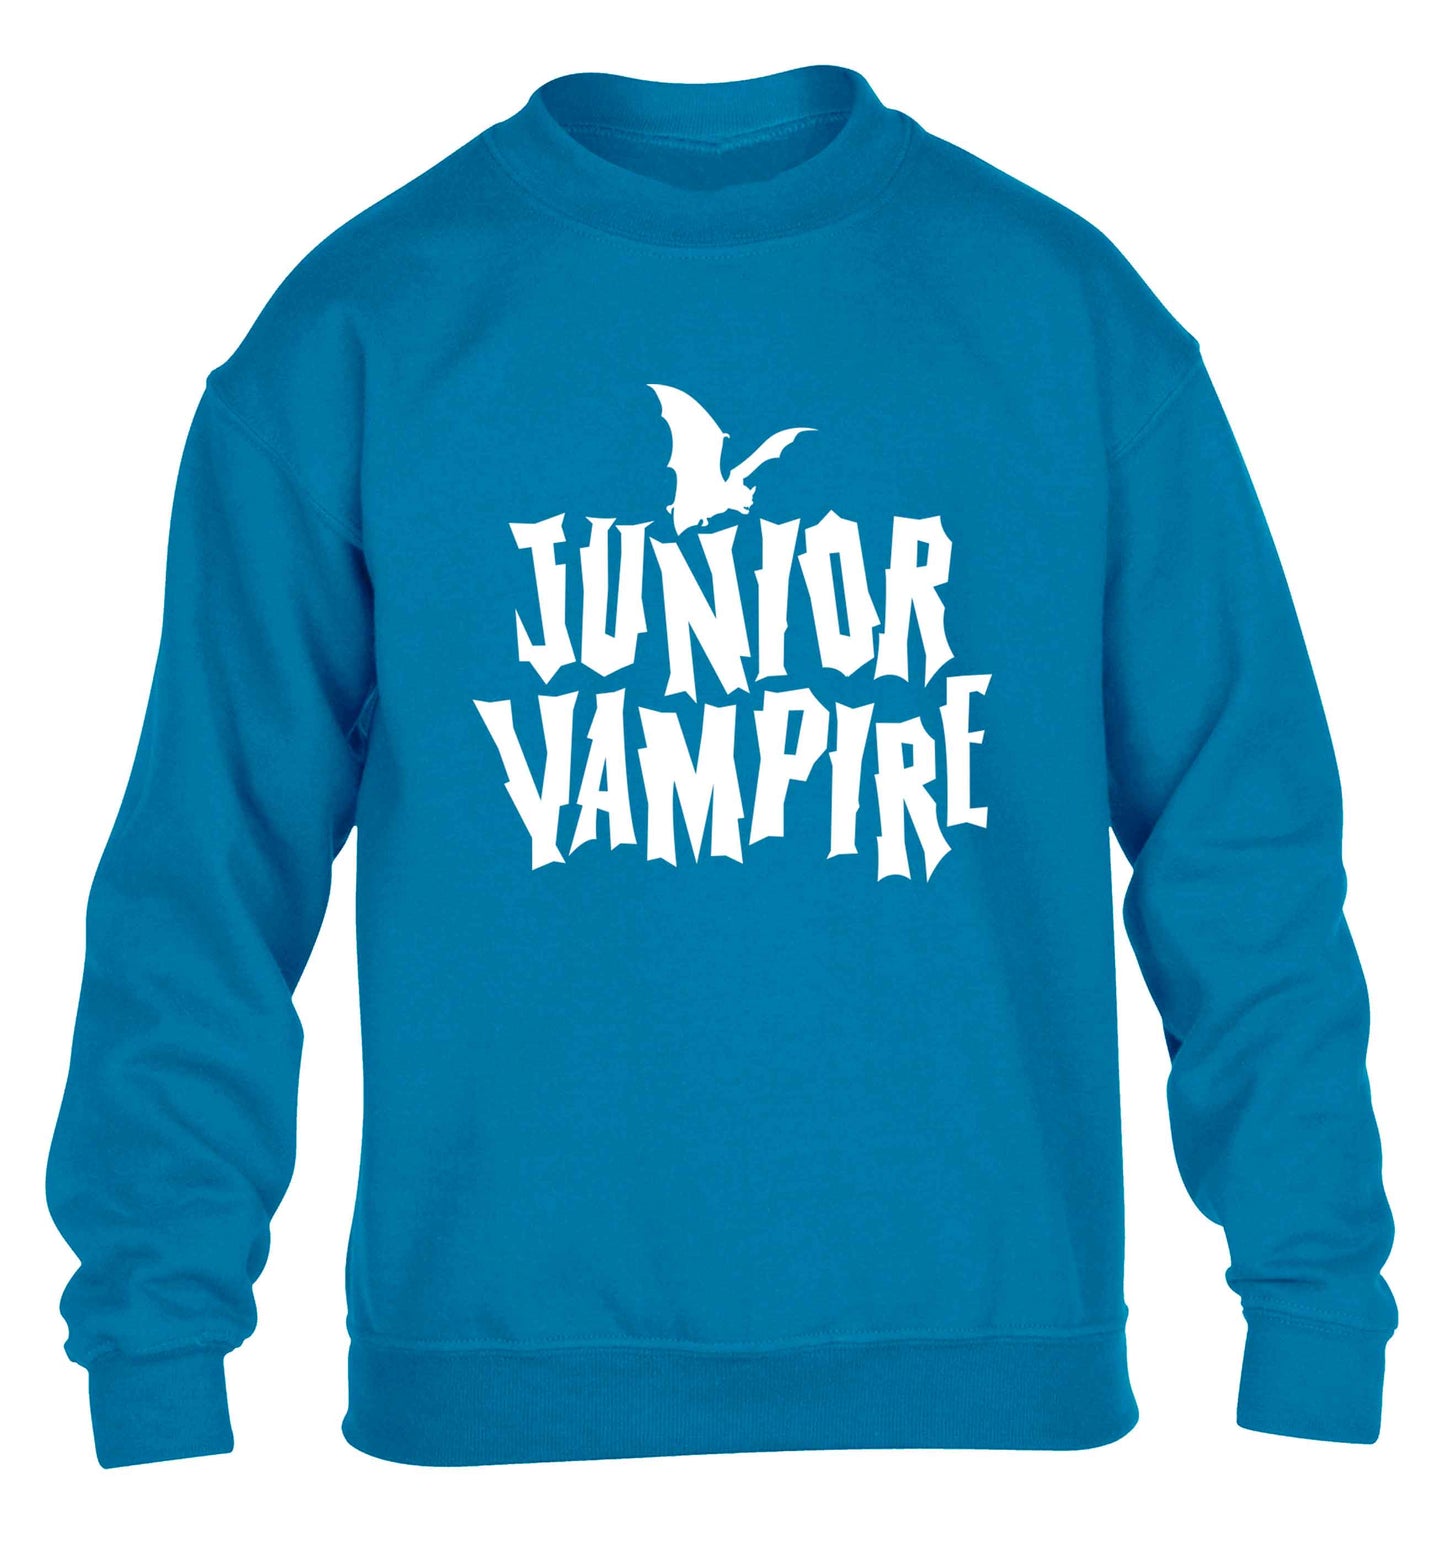 Junior vampire children's blue sweater 12-13 Years